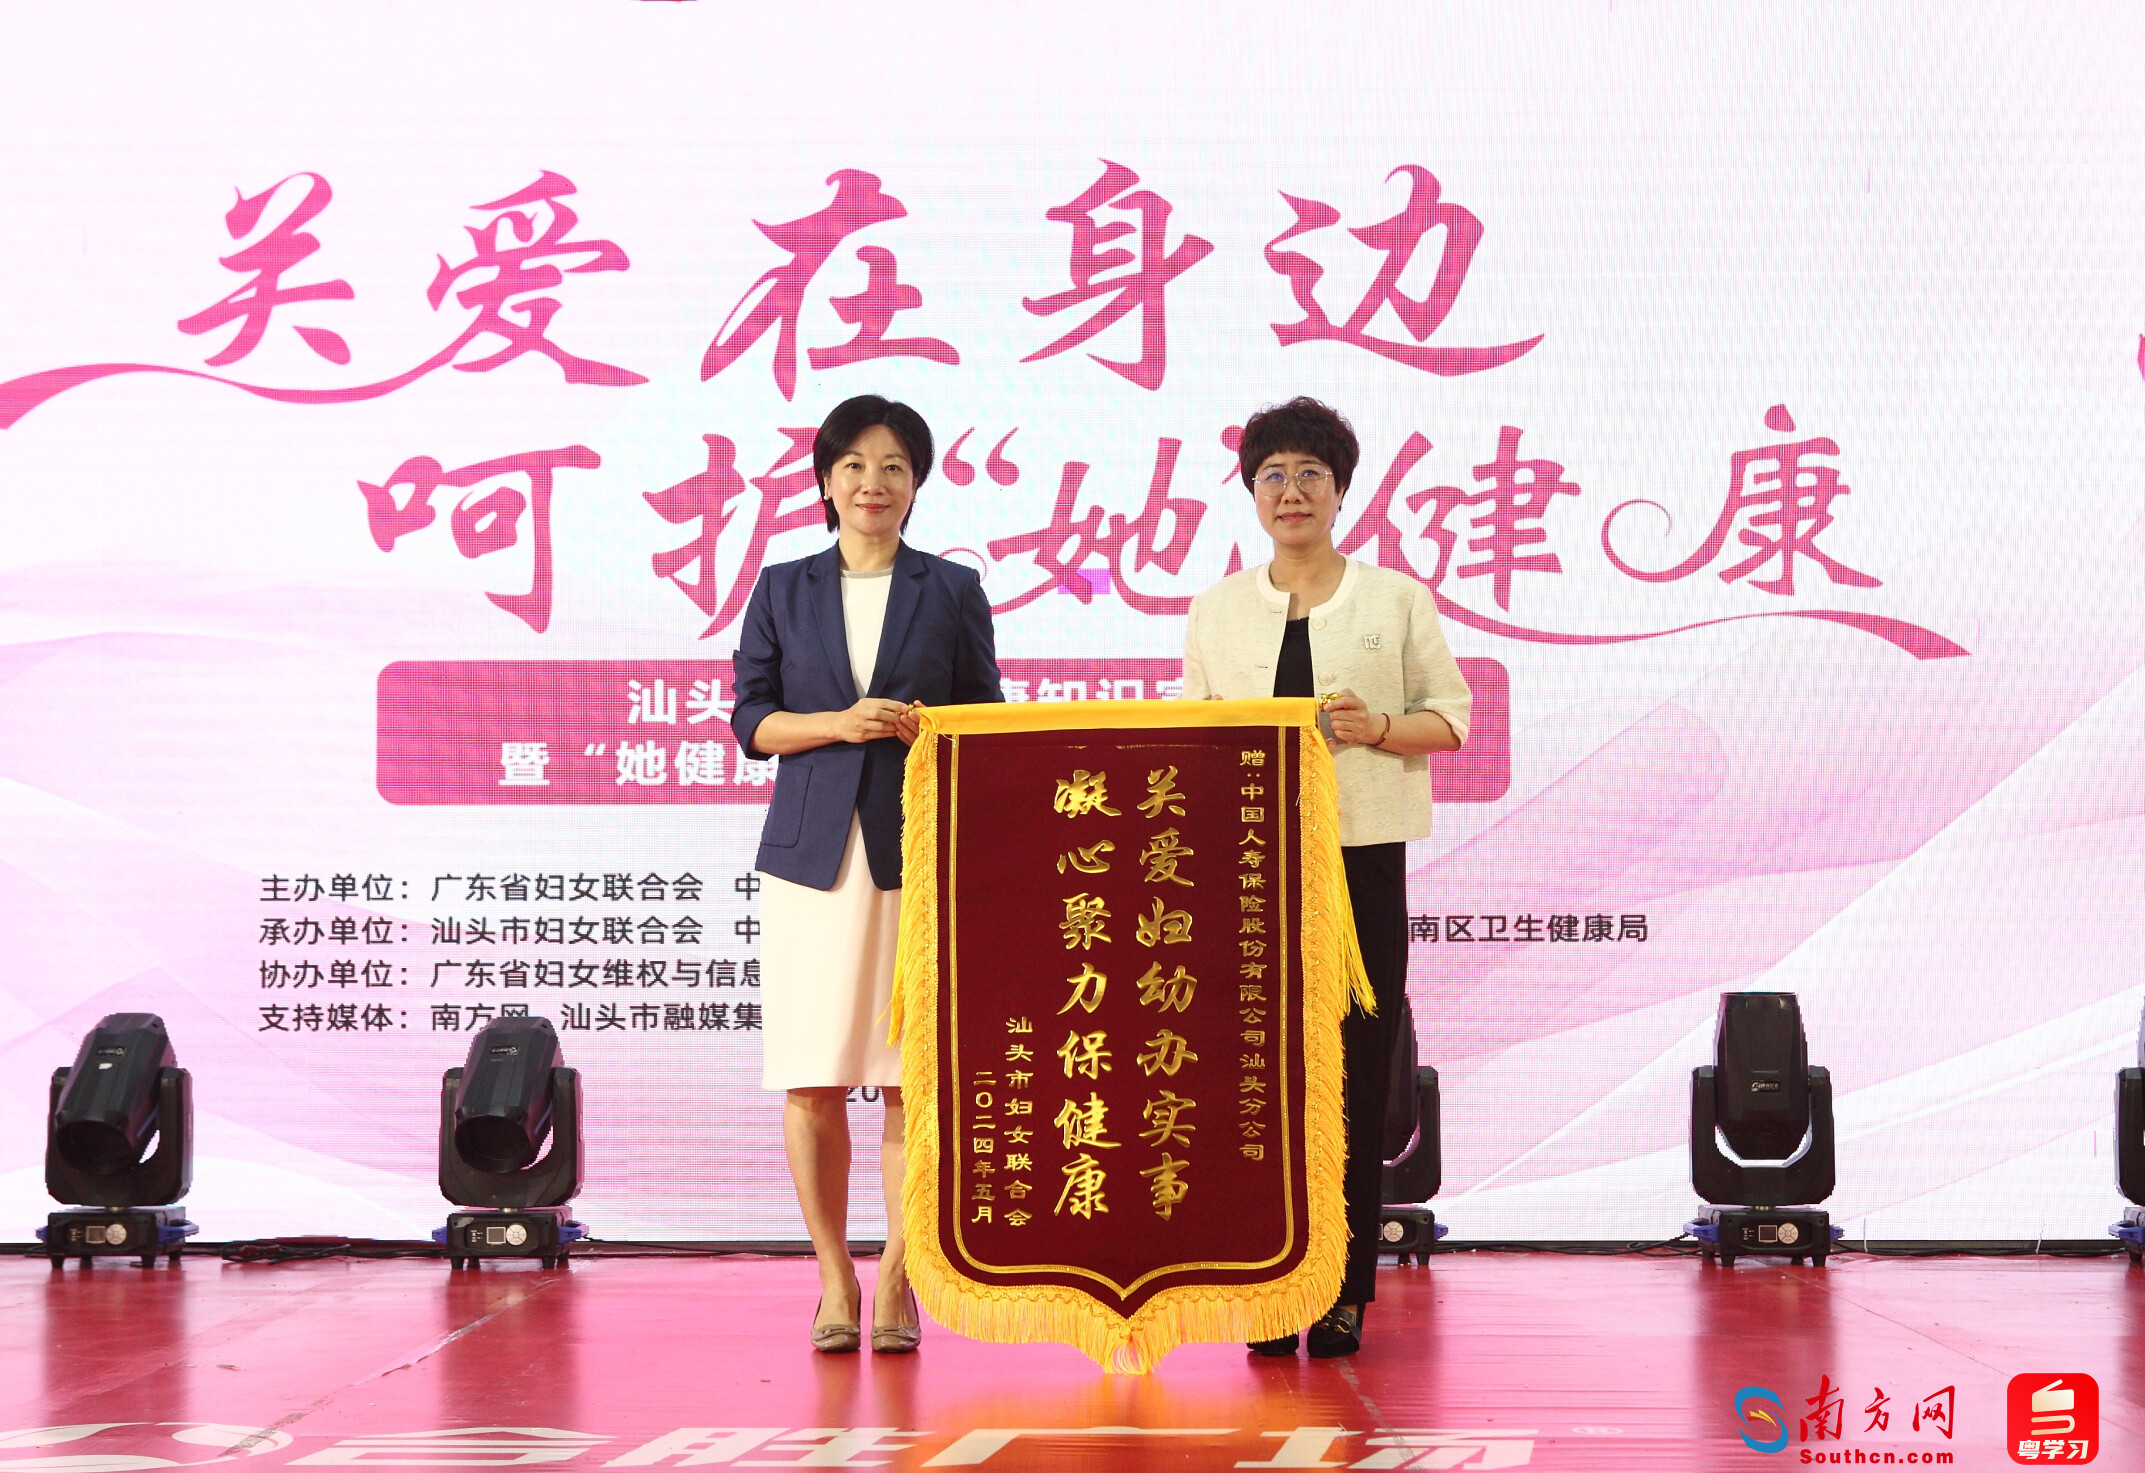 市妇联向中国人寿汕头分公司赠送锦旗。通讯员供图